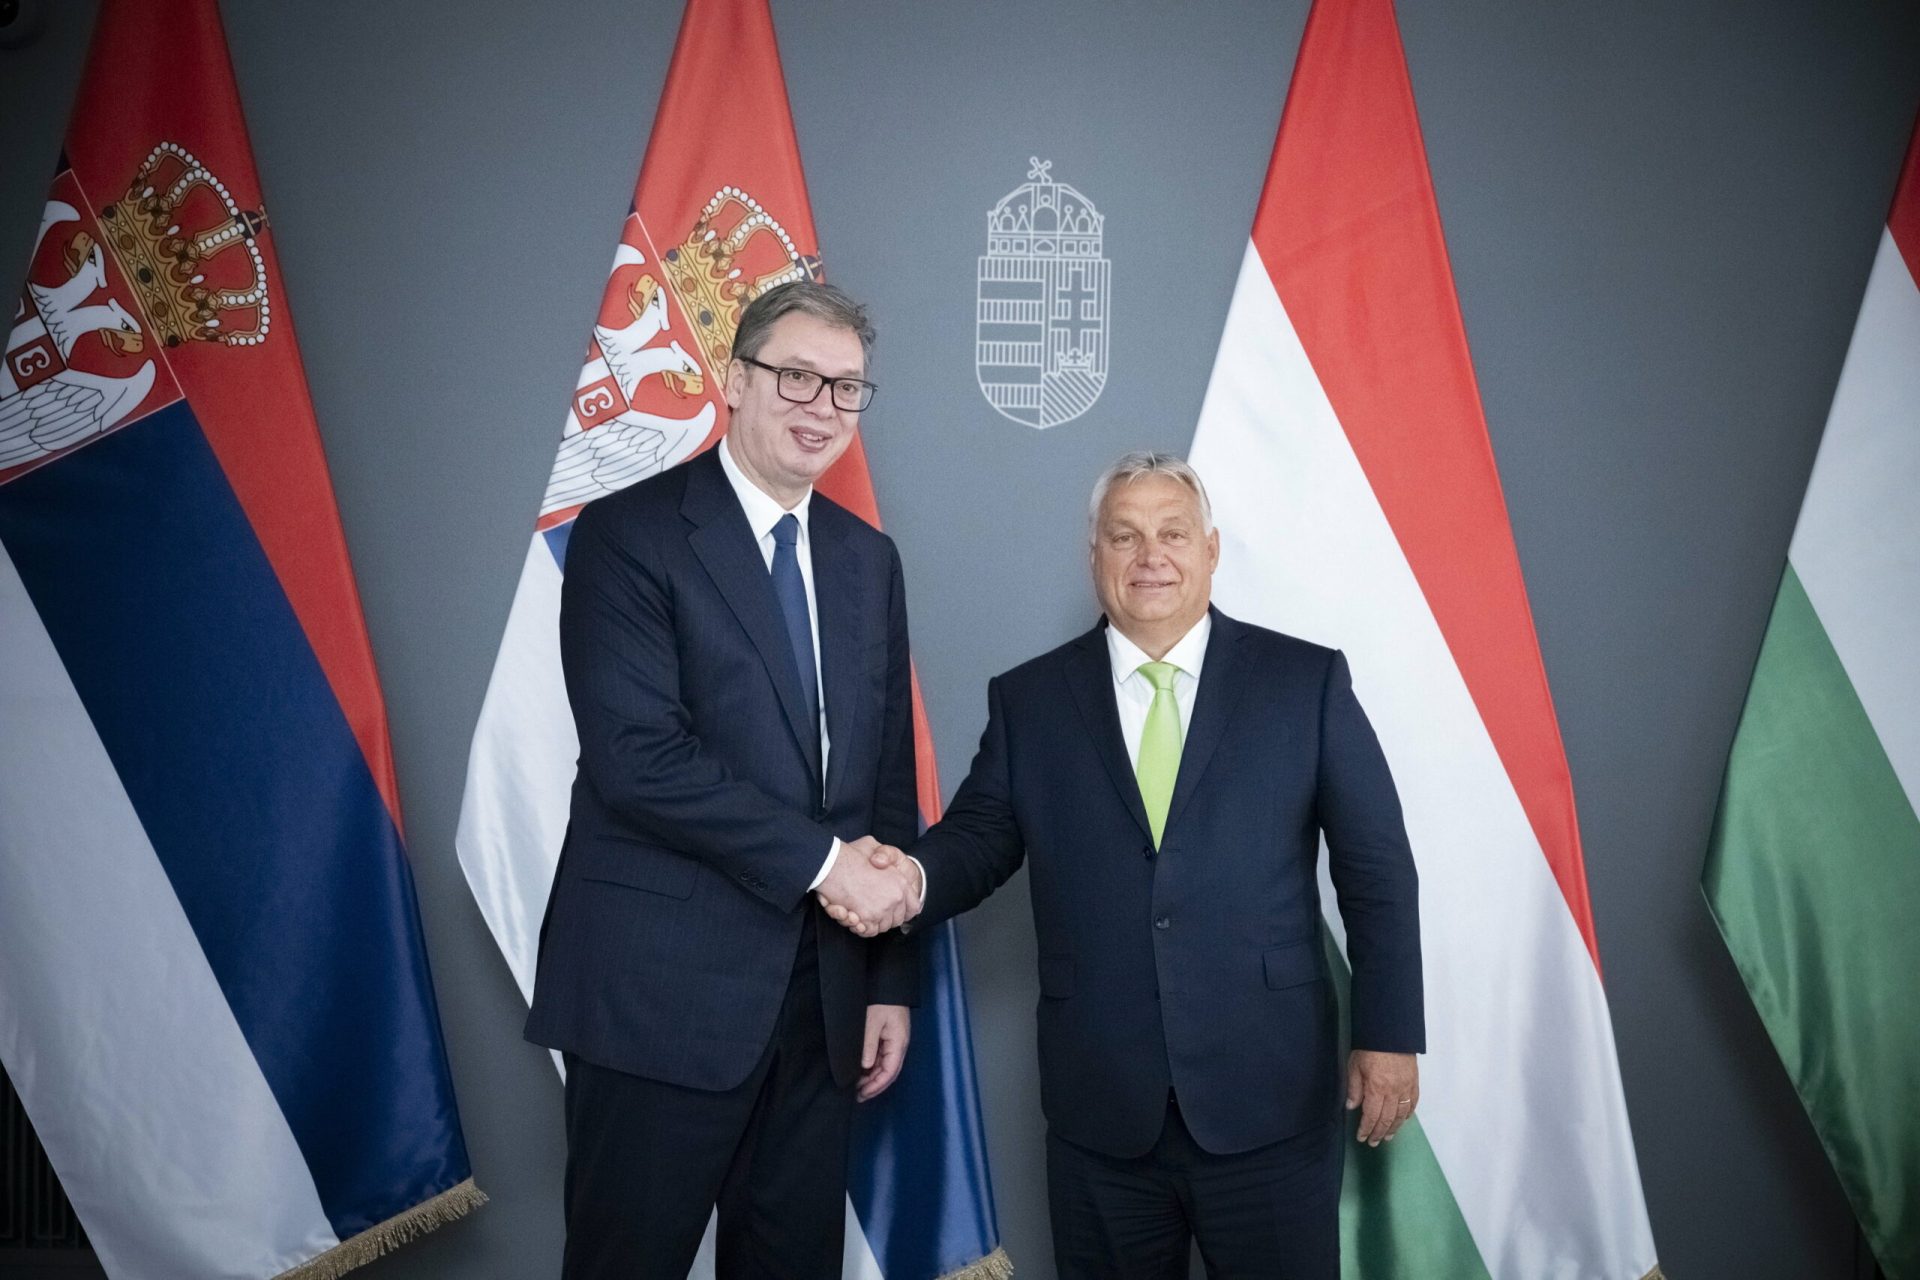 Az Orbán Viktorral való barátságát emlékműveken örökíti meg a szerb elnök